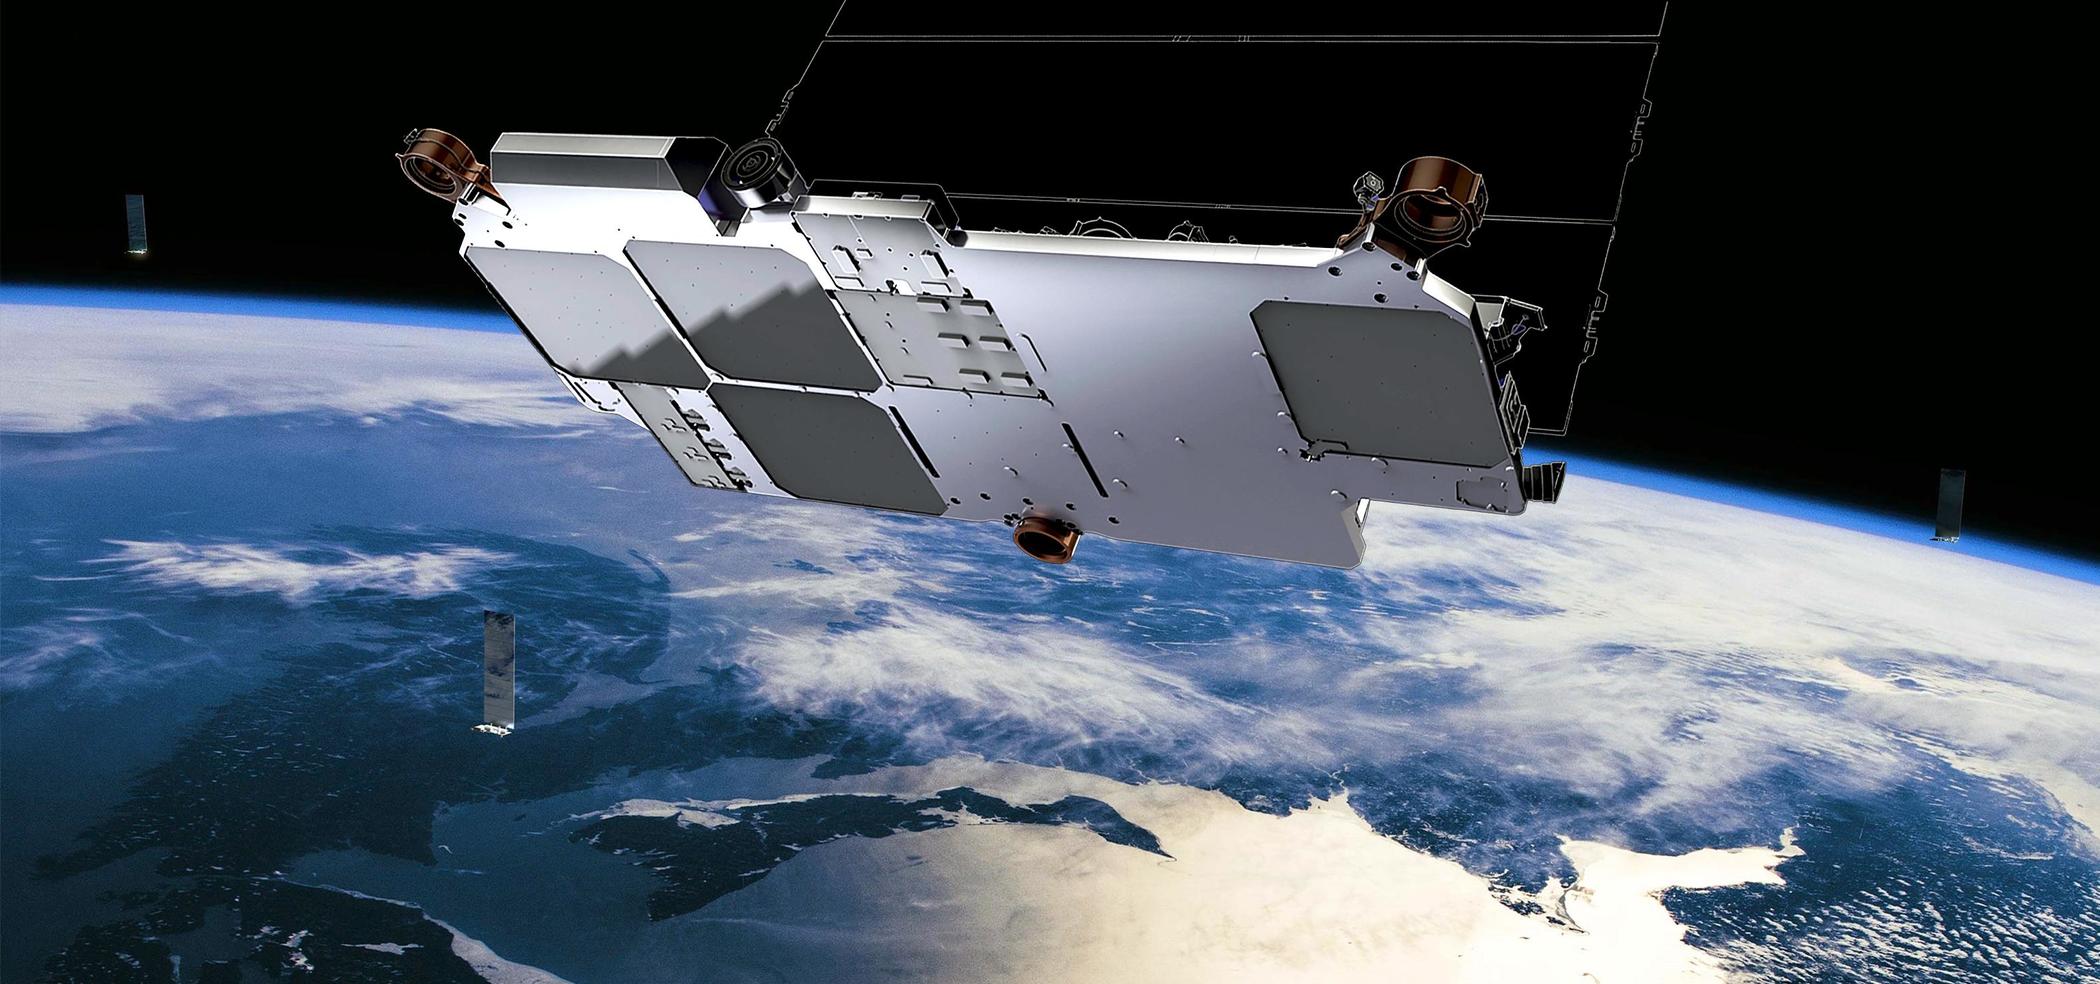 SpaceX升级  第二批星链卫星带宽比首批提升4倍